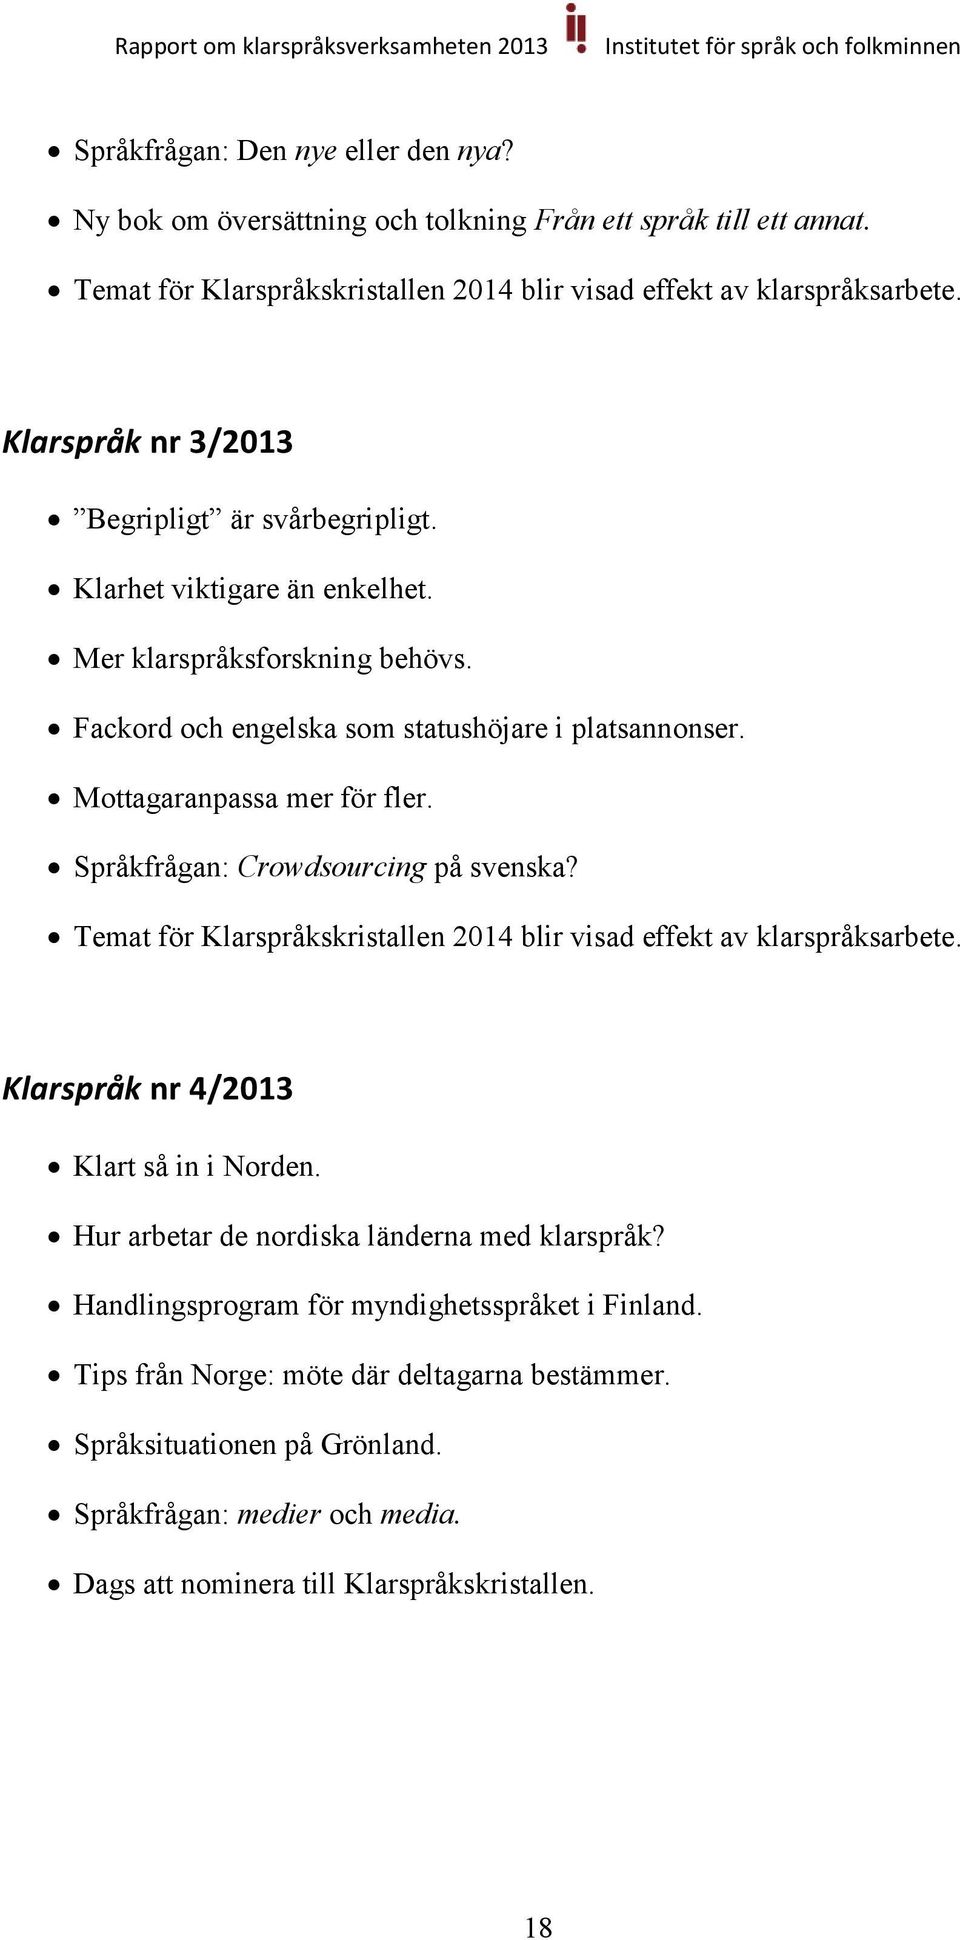 Språkfrågan: Crowdsourcing på svenska? Temat för Klarspråkskristallen 2014 blir visad effekt av klarspråksarbete. Klarspråk nr 4/2013 Klart så in i Norden.